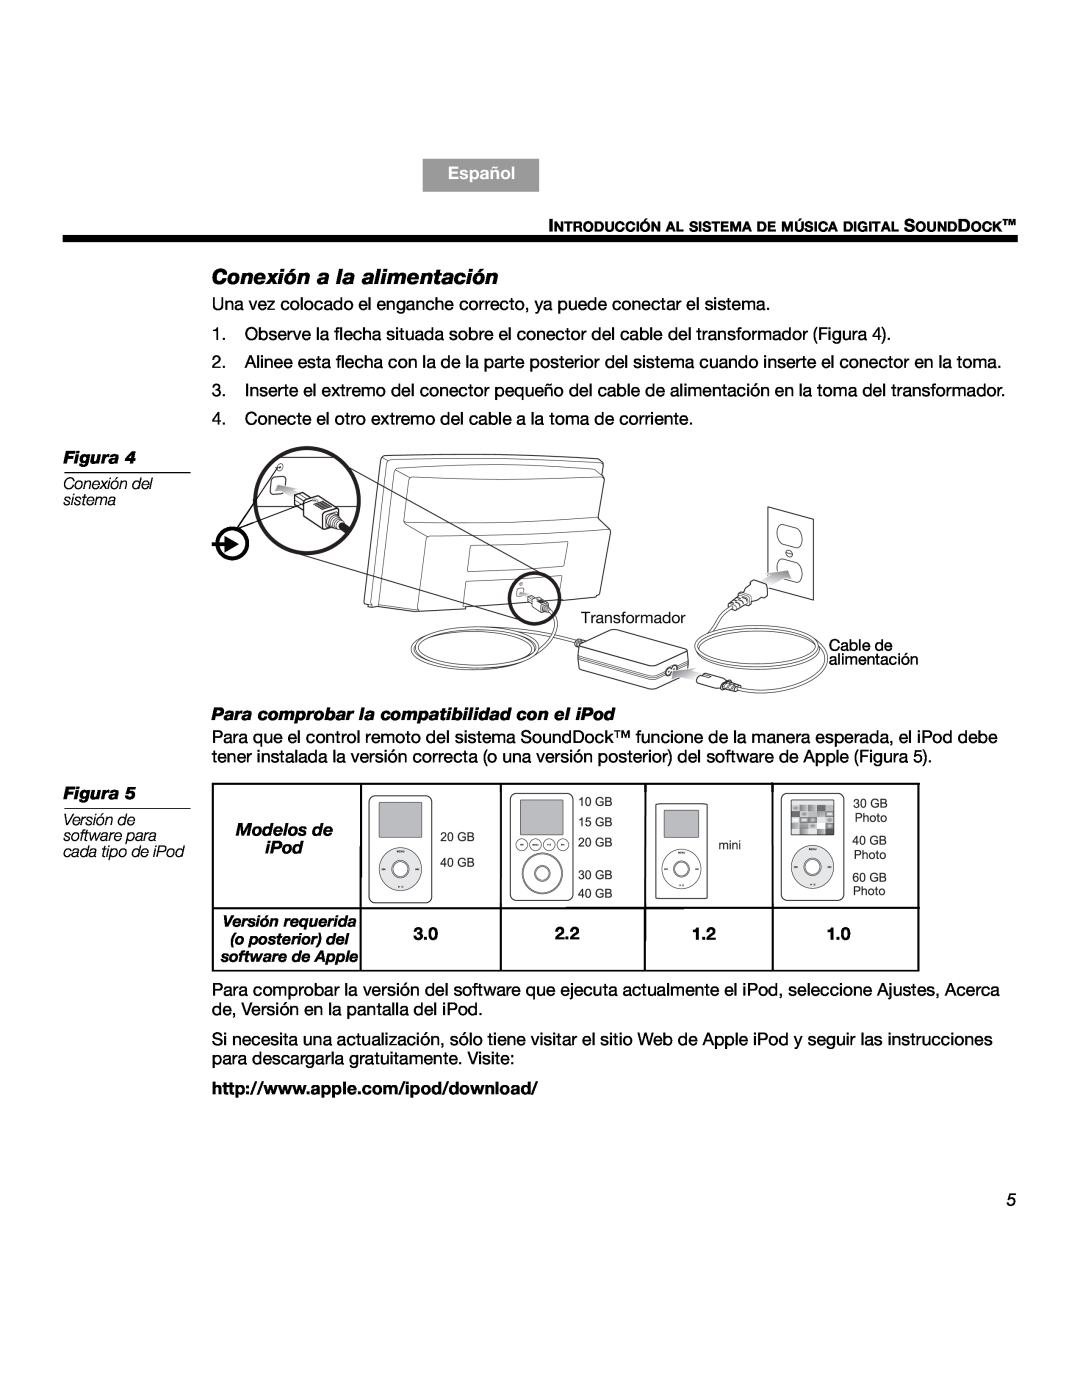 Bose SOUNDDOCKTM manual Conexión a la alimentación, Para comprobar la compatibilidad con el iPod, Modelos de iPod, Español 